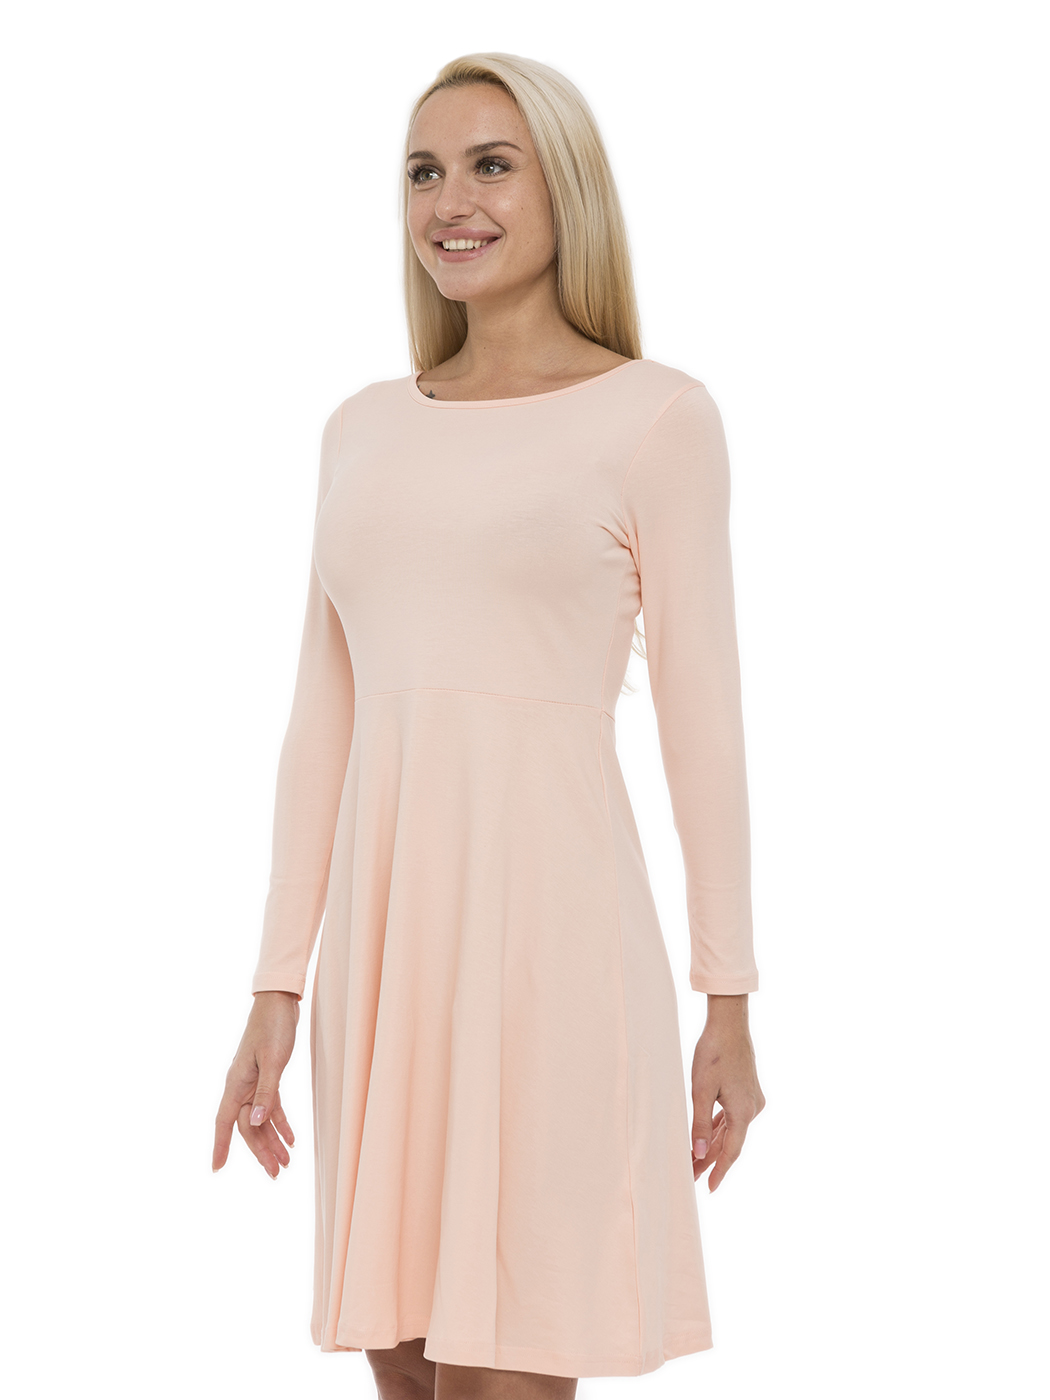 Платье женское Lunarable kelb003_ розовое M